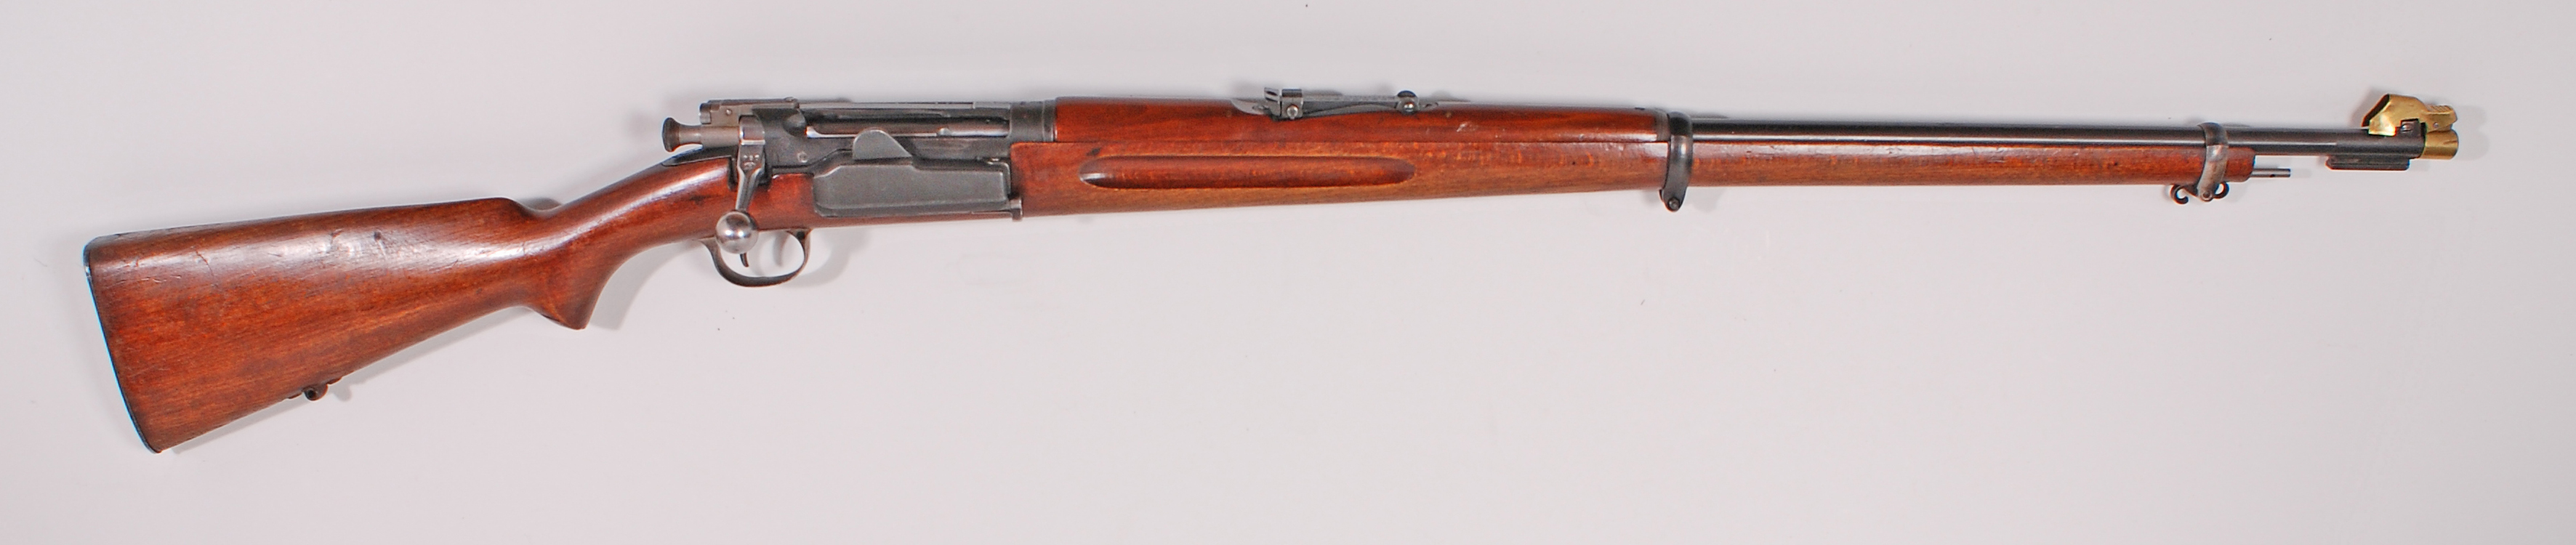 ./guns/rifle/bilder/Rifle-Kongsberg-Krag-M1894-privat-NC-1944-39094-1.jpg